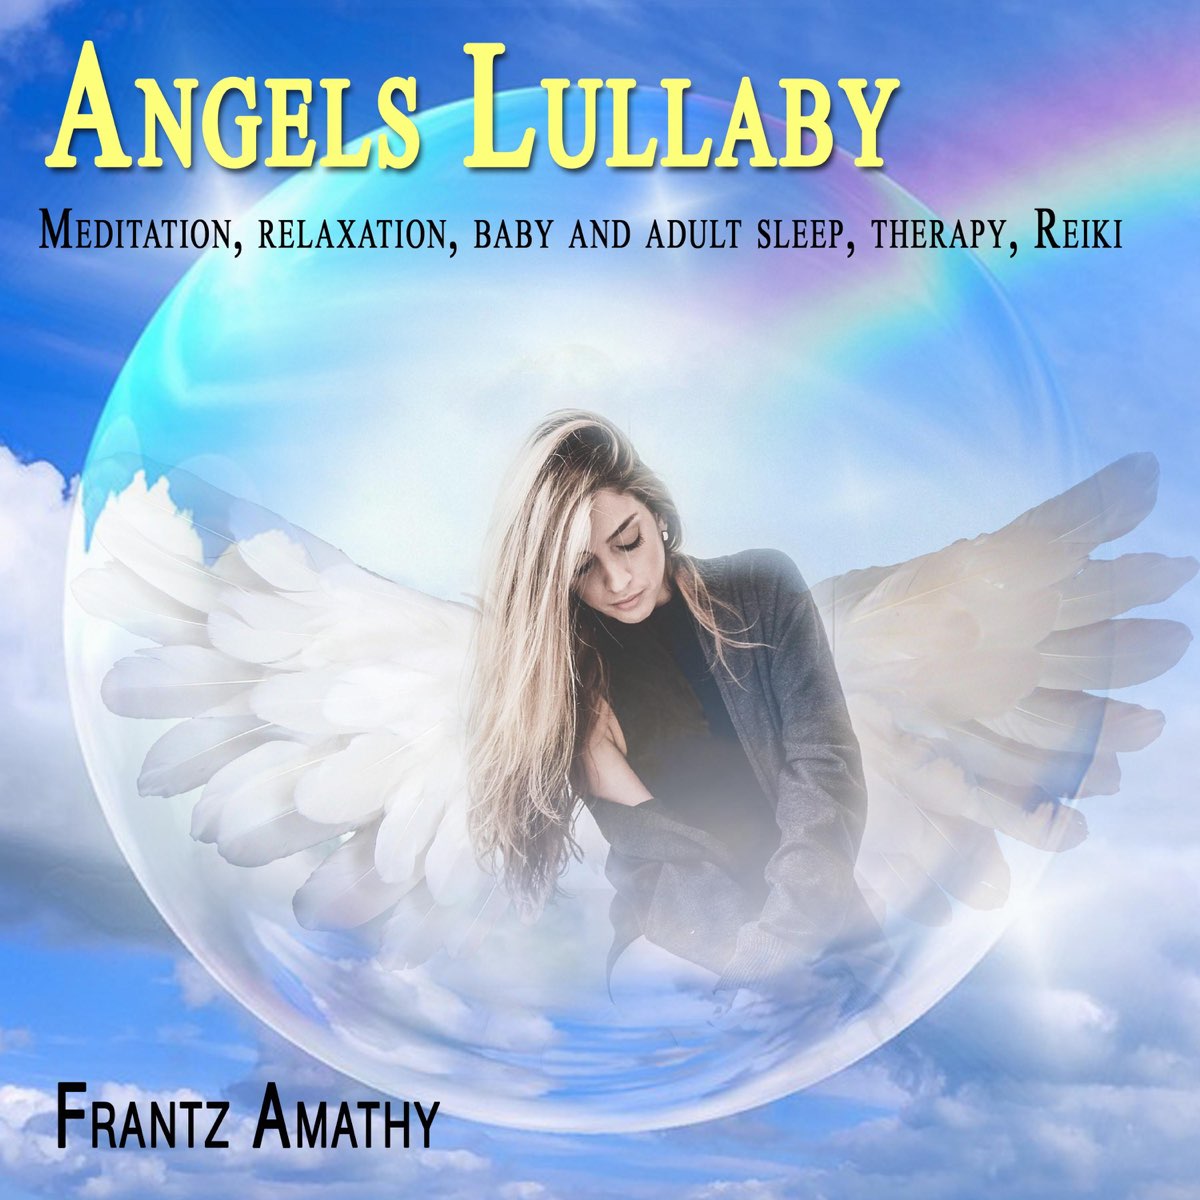 Колыбельная для ангела. Angels Lullaby Хелена. Колыбельная с ангелом. Arash Helena Lullaby. Песня Angel.